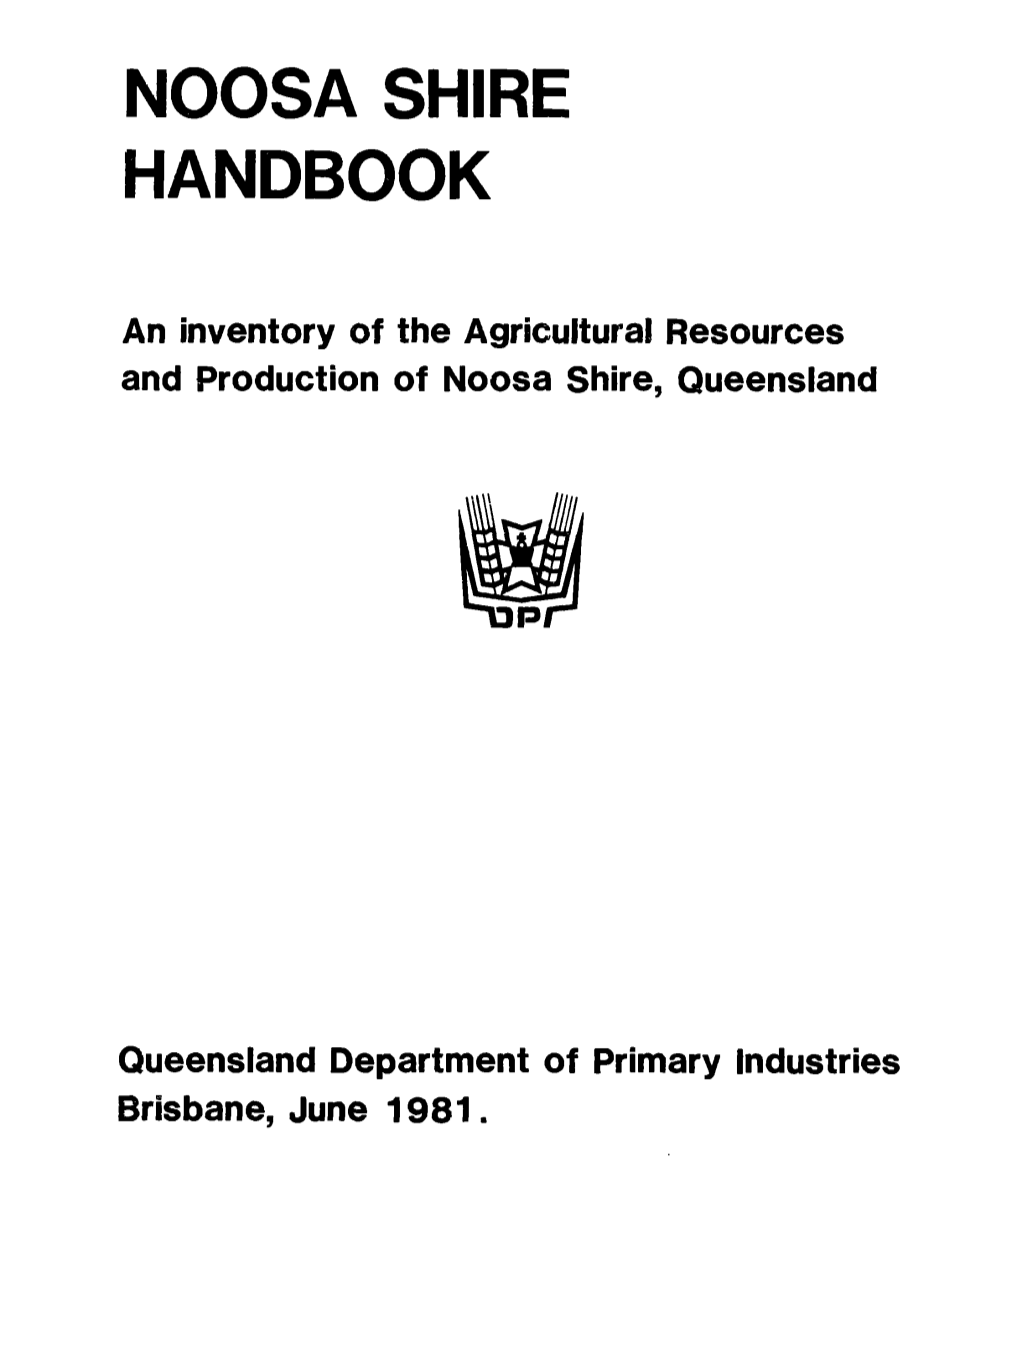 Noosa Shire Handbook